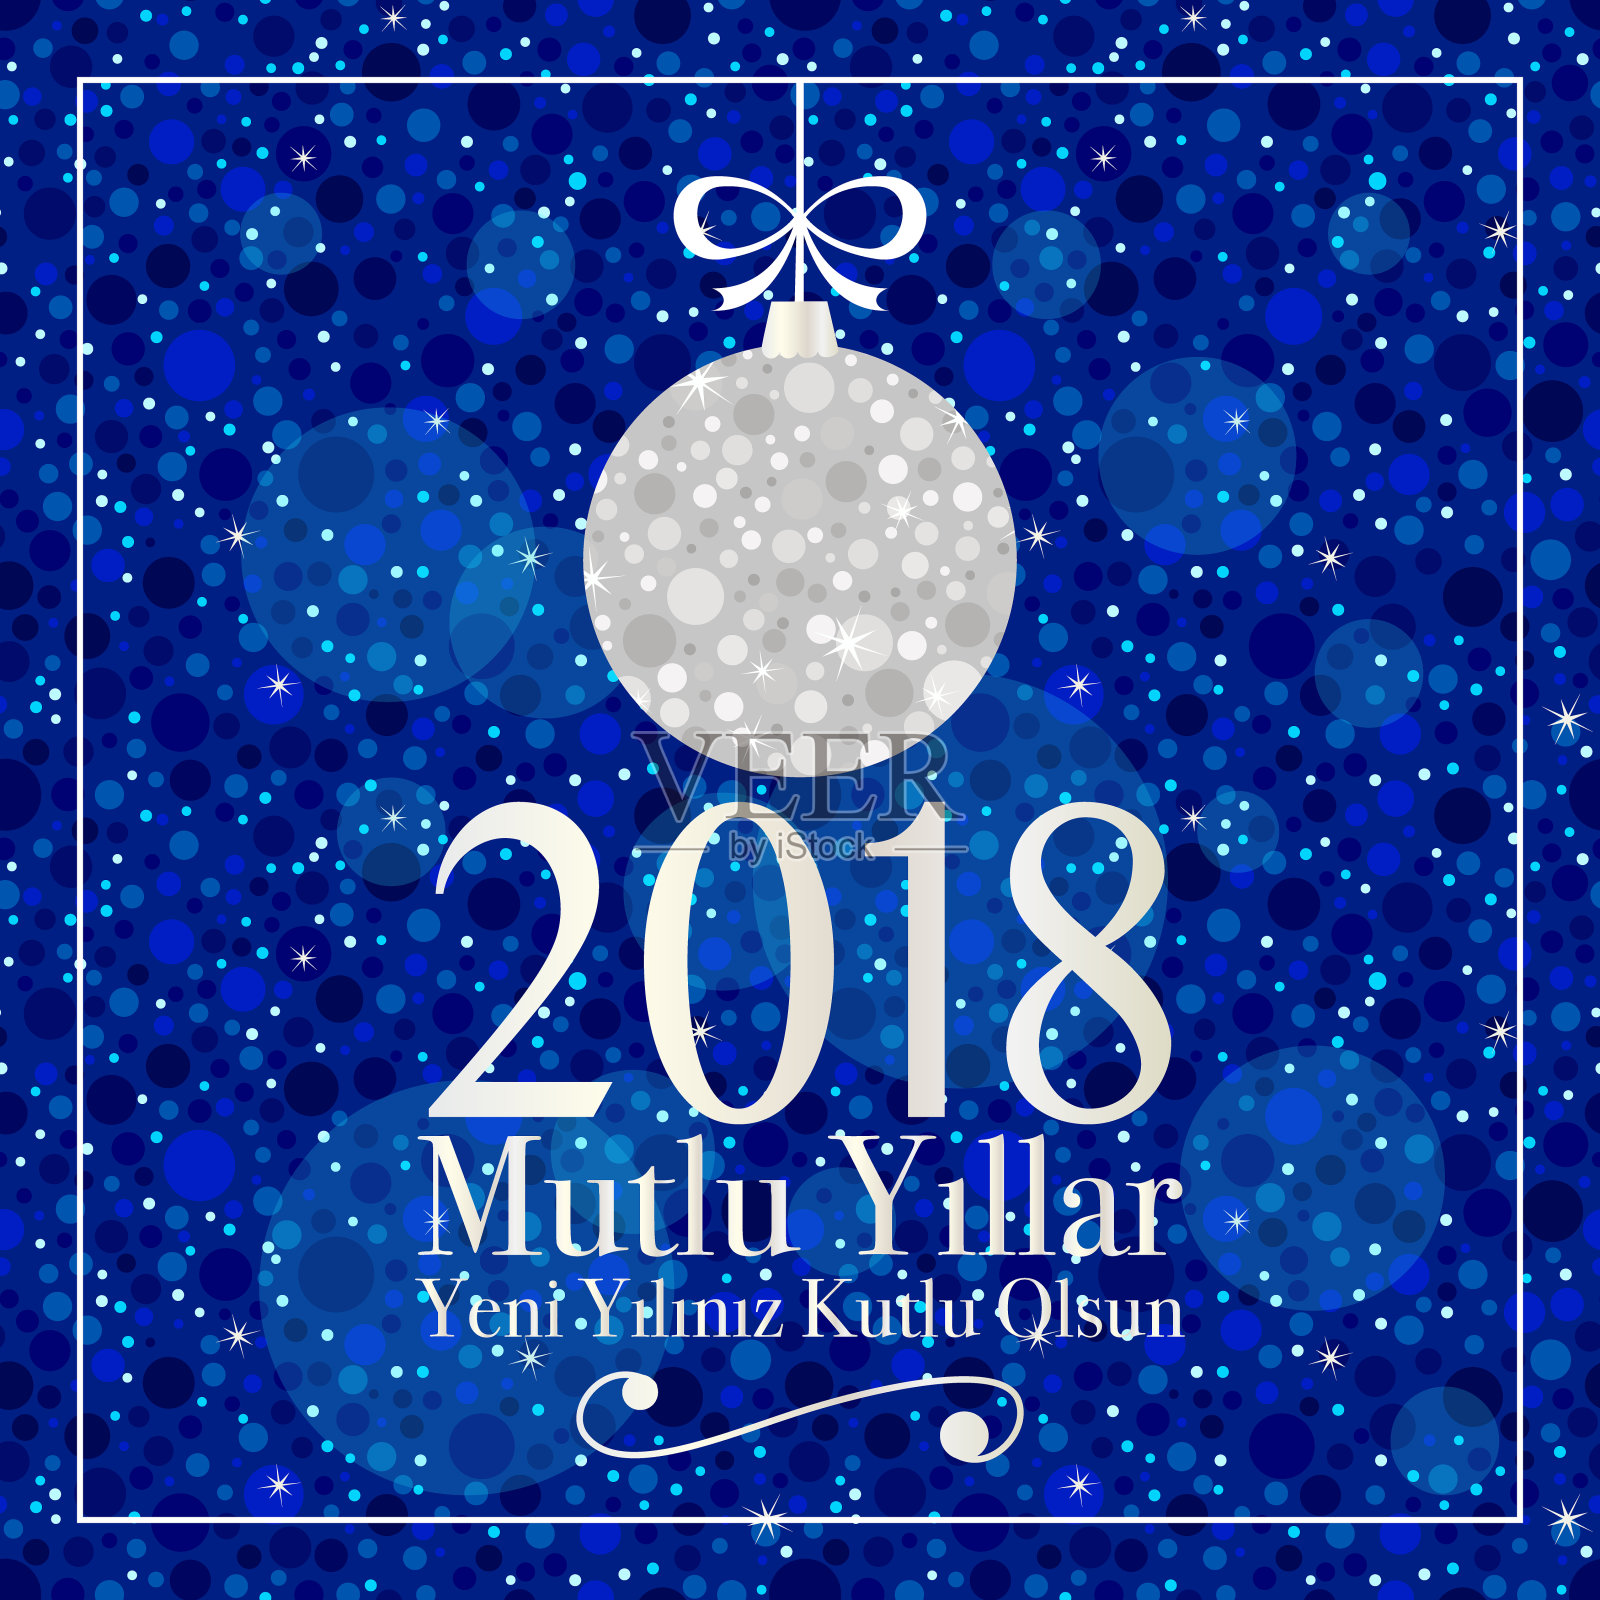 2018年新年贺卡银球节日快乐。土耳其- Mutlu Yillar。Yeni yiliniz kutlu olsun。设计模板素材